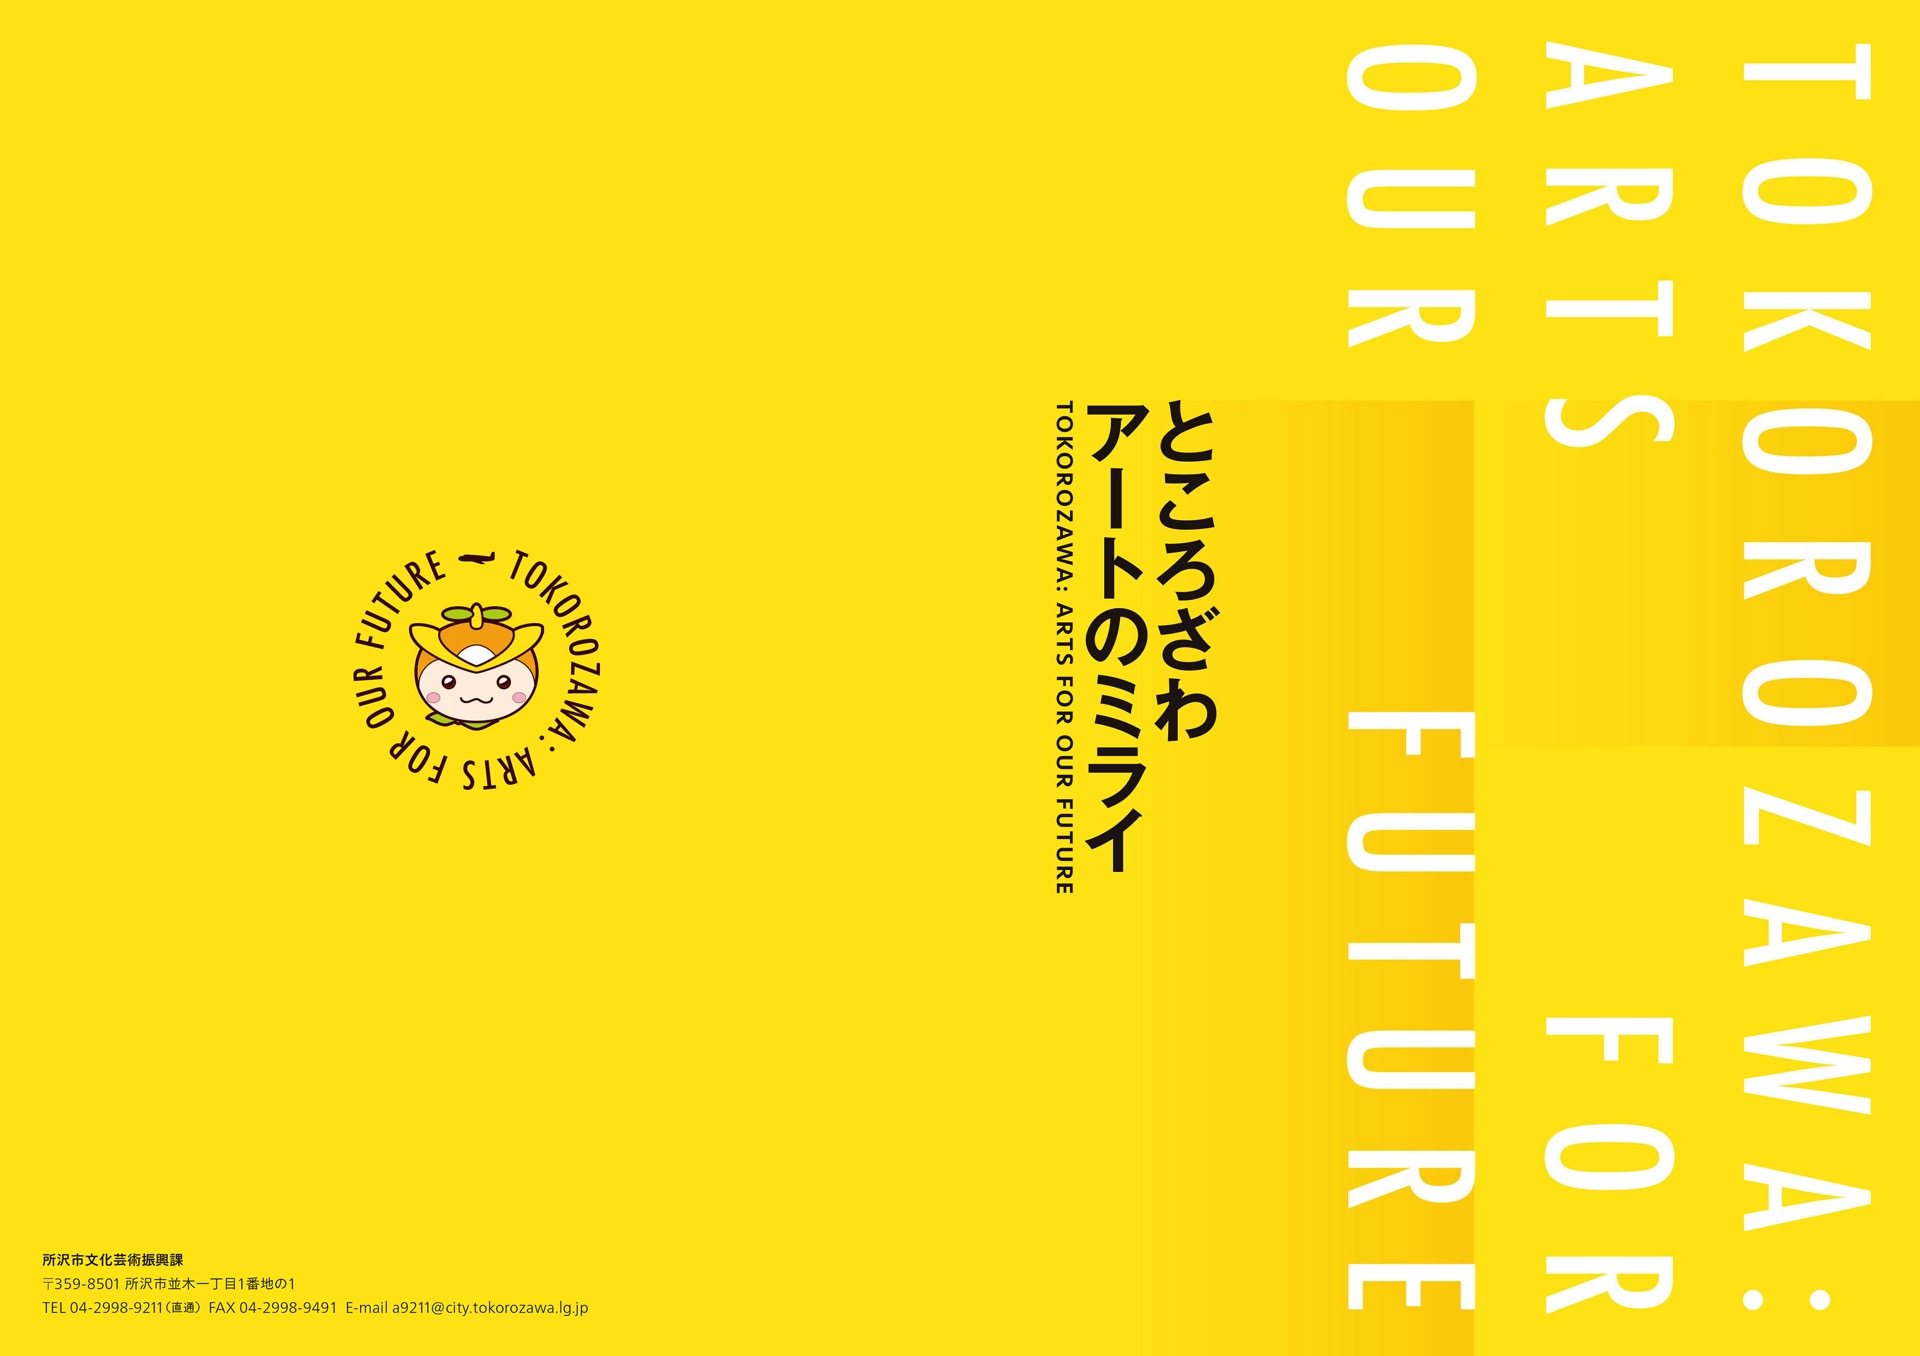 ところざわ アートの未来 TOKOROZAWA: ARTS FOR OUR FUTURE - グランエミオ所沢2階セントラルプラザ イベントスペース, 西武鉄道 所沢駅, 所沢駅東口市民ギャラリー